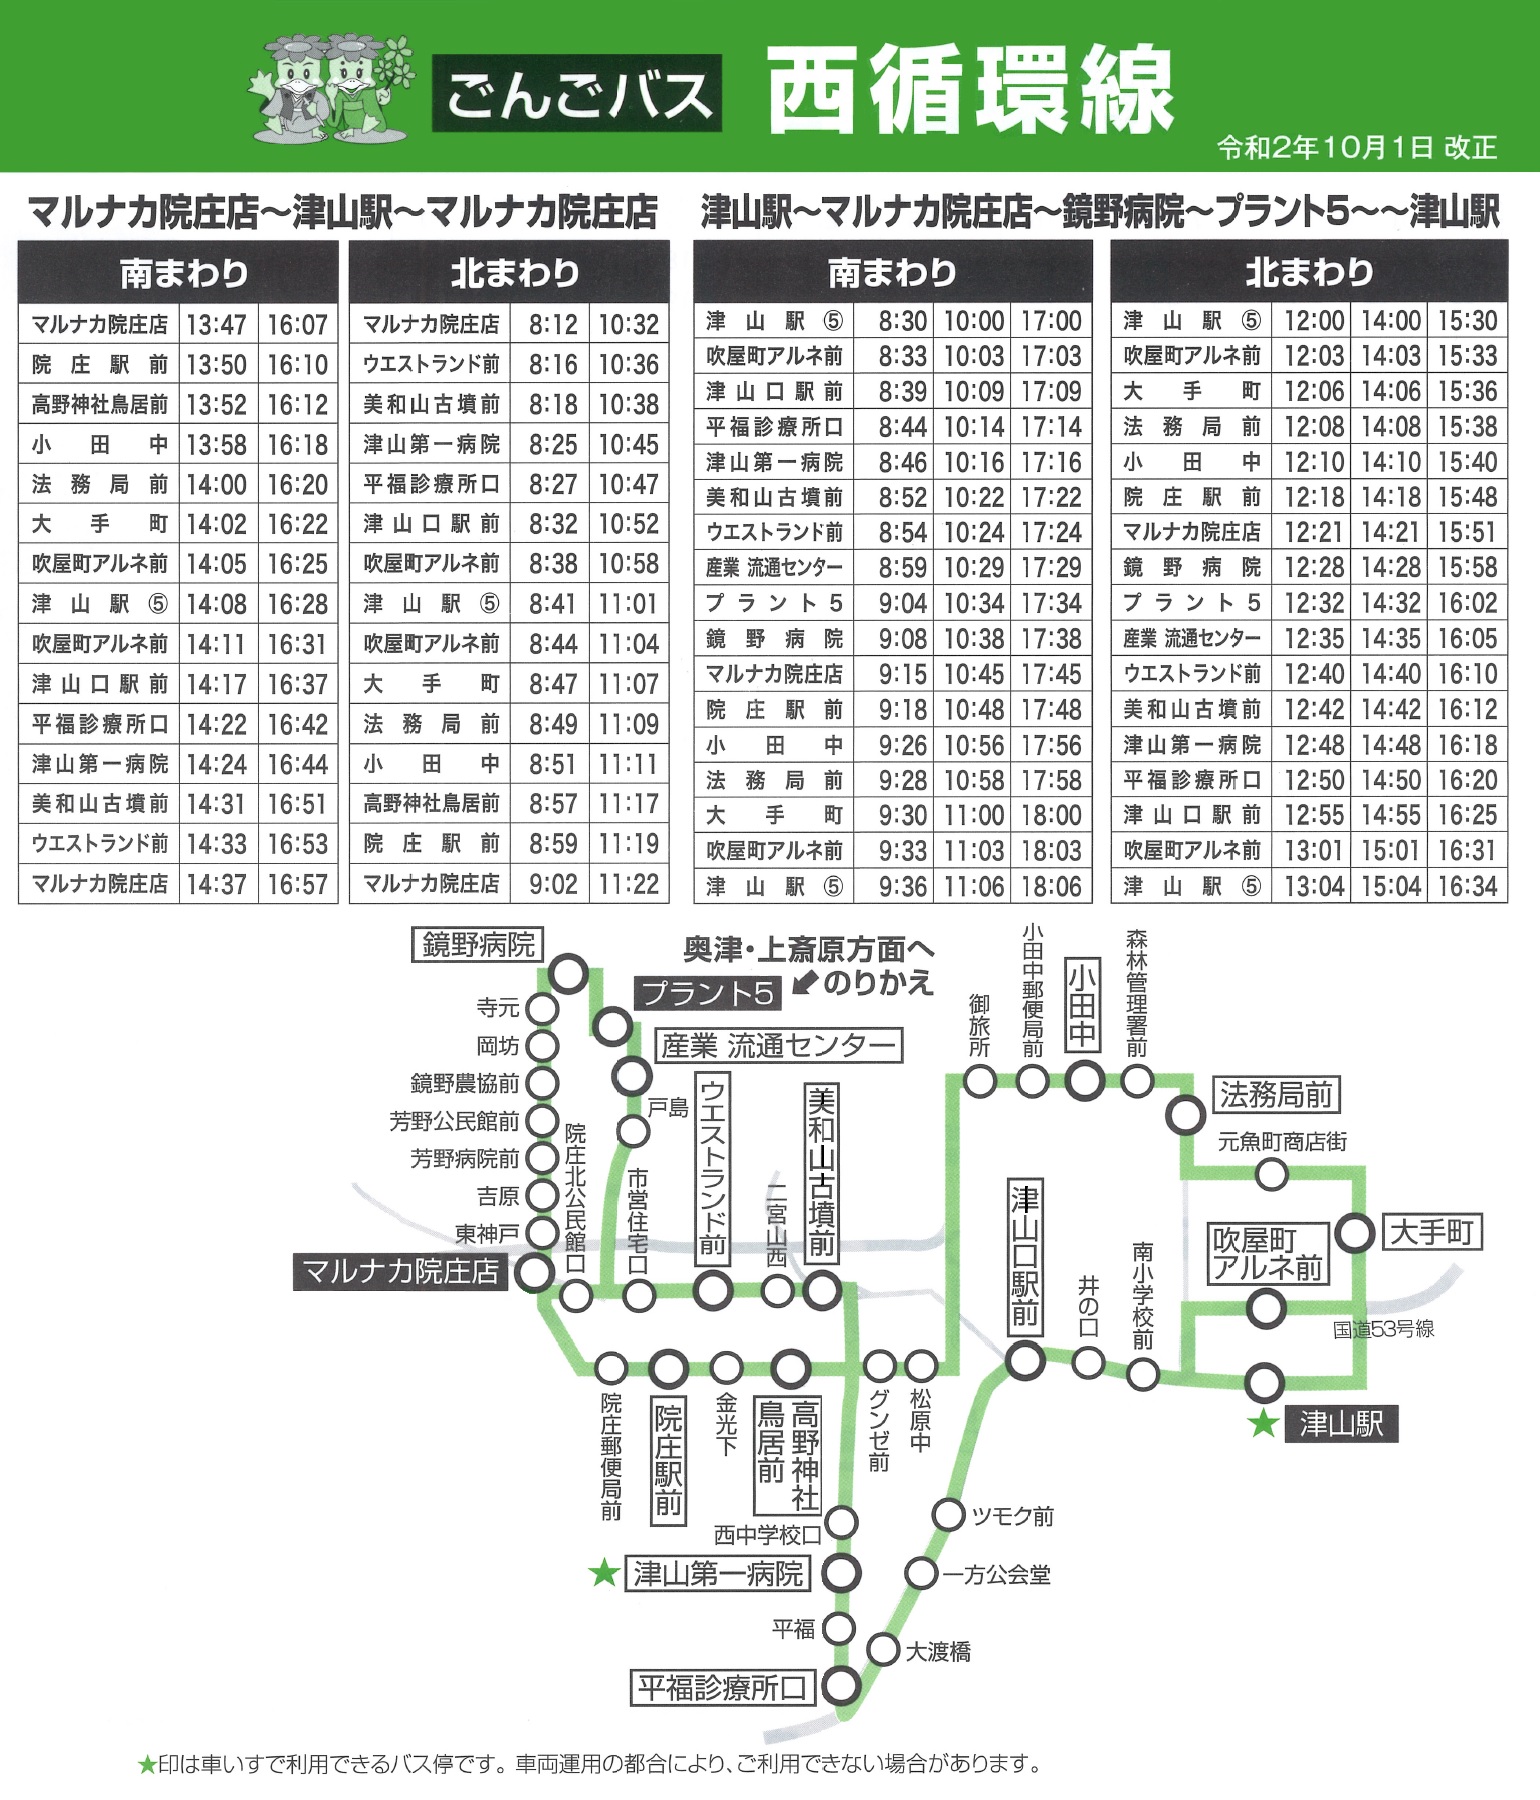 市バス 表 川崎 時刻 川崎市バスの路線図、時刻表、運賃・定期券